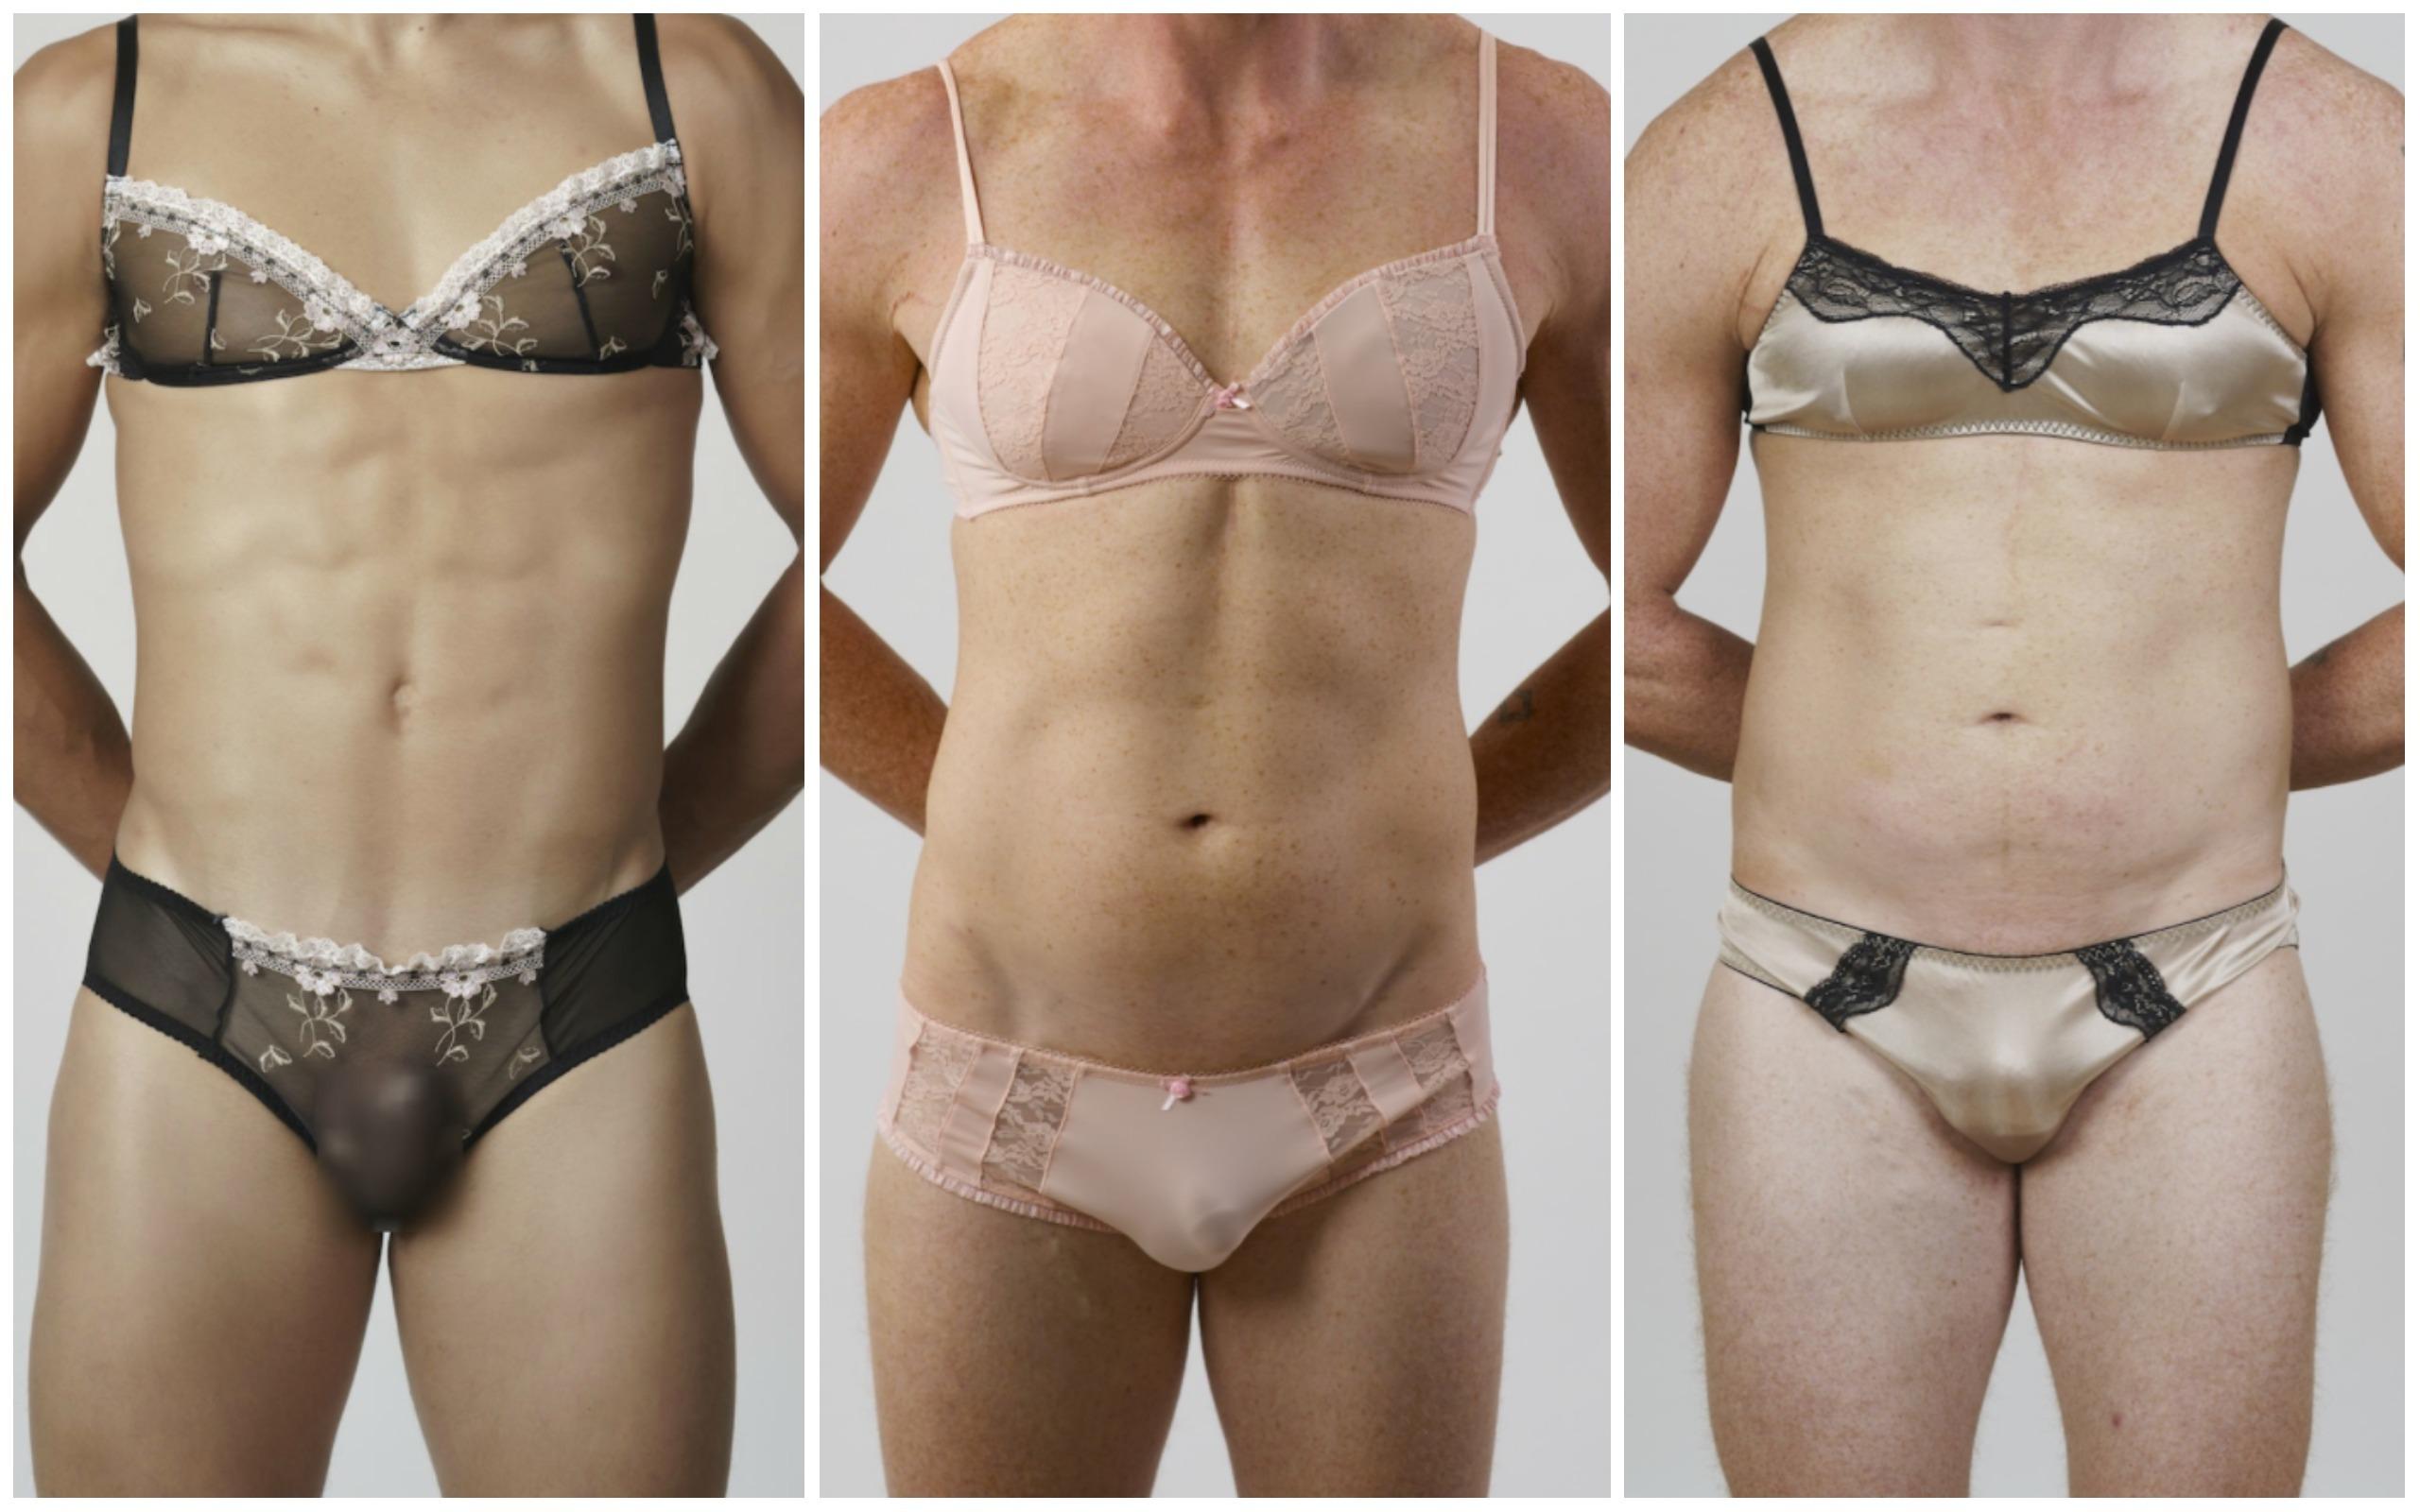 mild Dader schaduw Nu ook sexy lingerie voor mannen | Buitenland | Telegraaf.nl